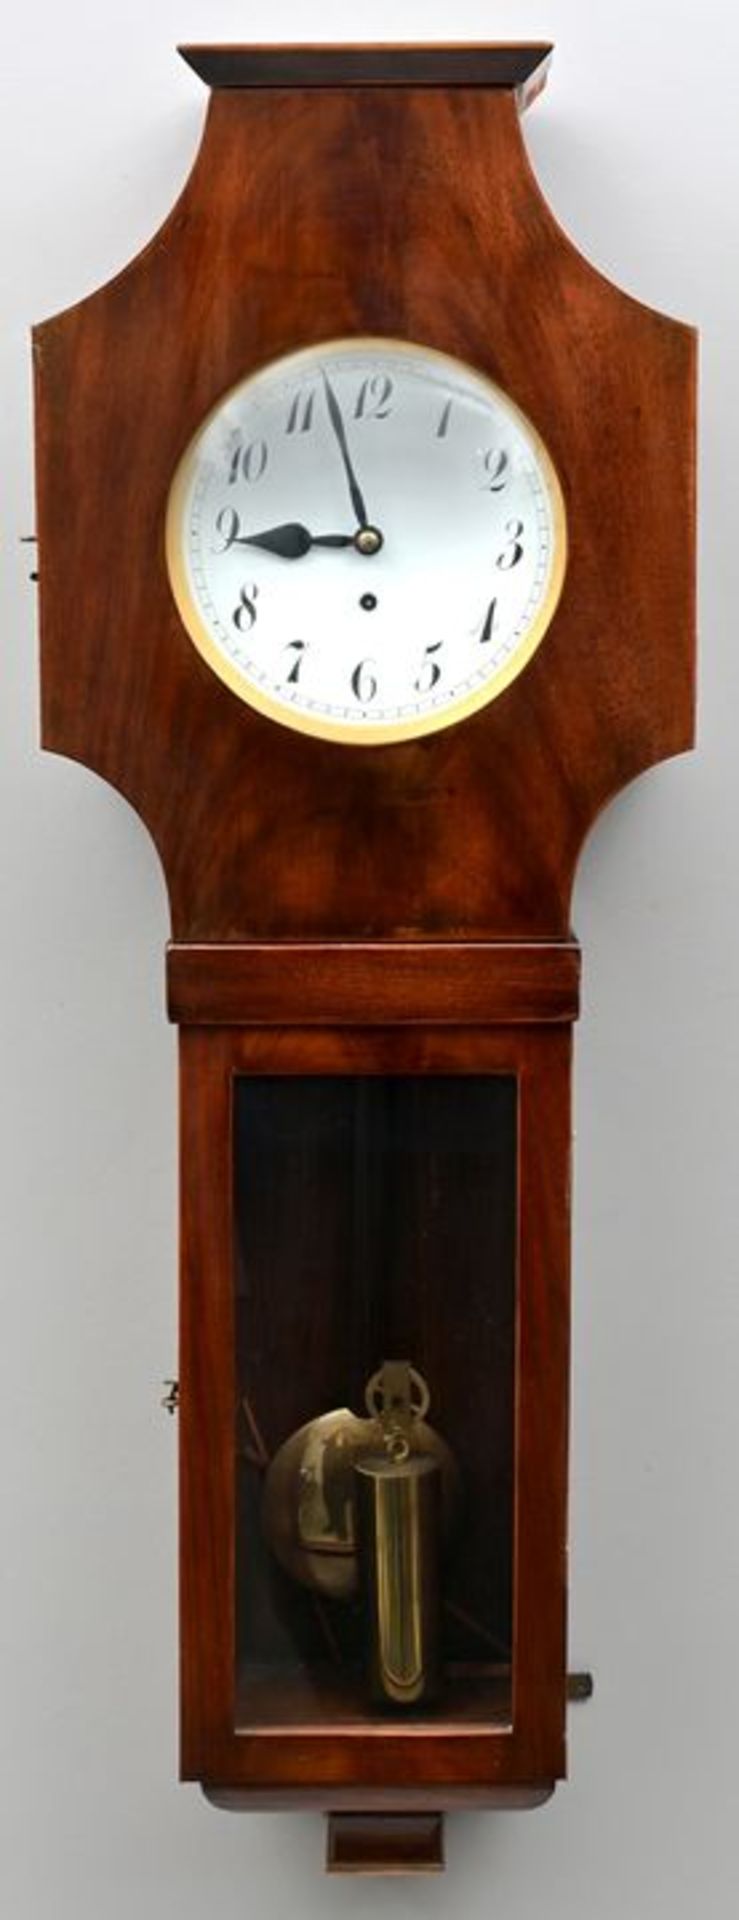 Wiener Wanduhr mit Pendel / Wall clock